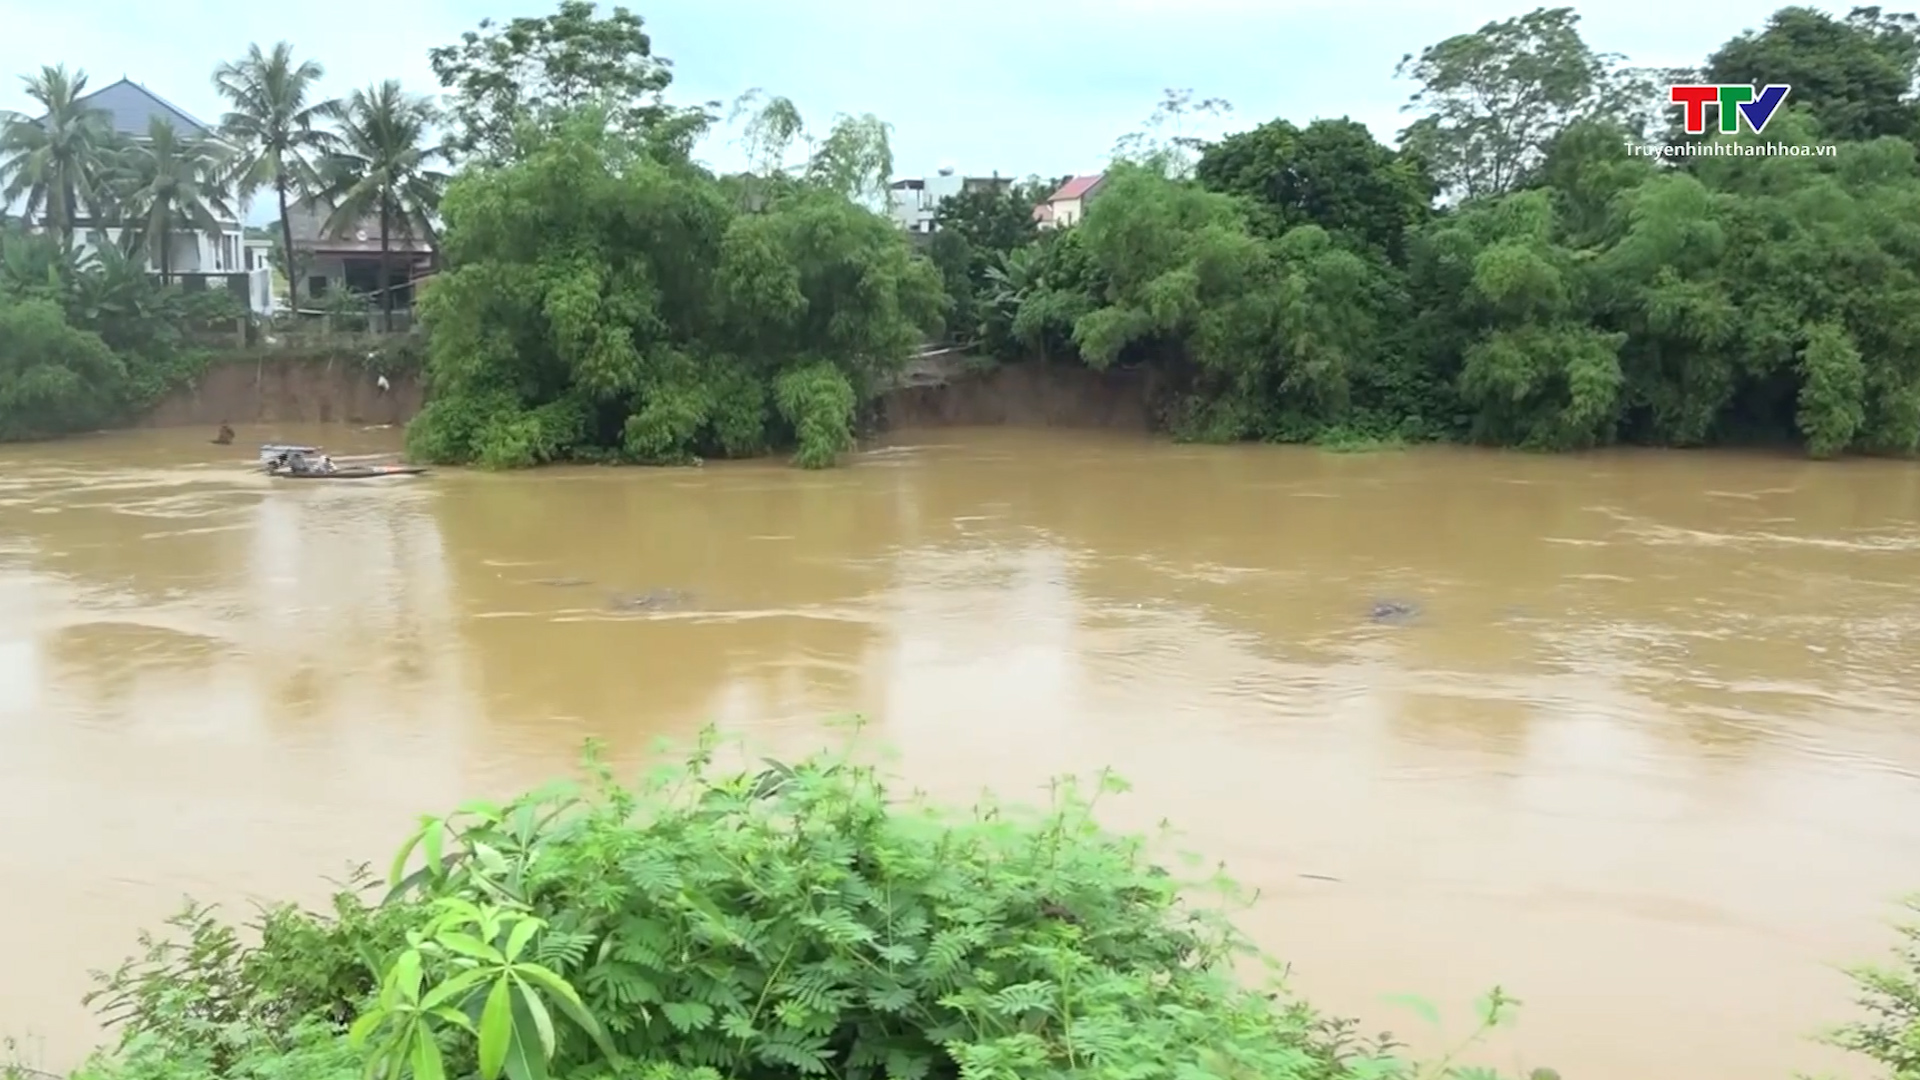 Cảnh báo lũ trên các sông khu vực tỉnh Thanh Hóa (ngày 29/9) - Ảnh 1.